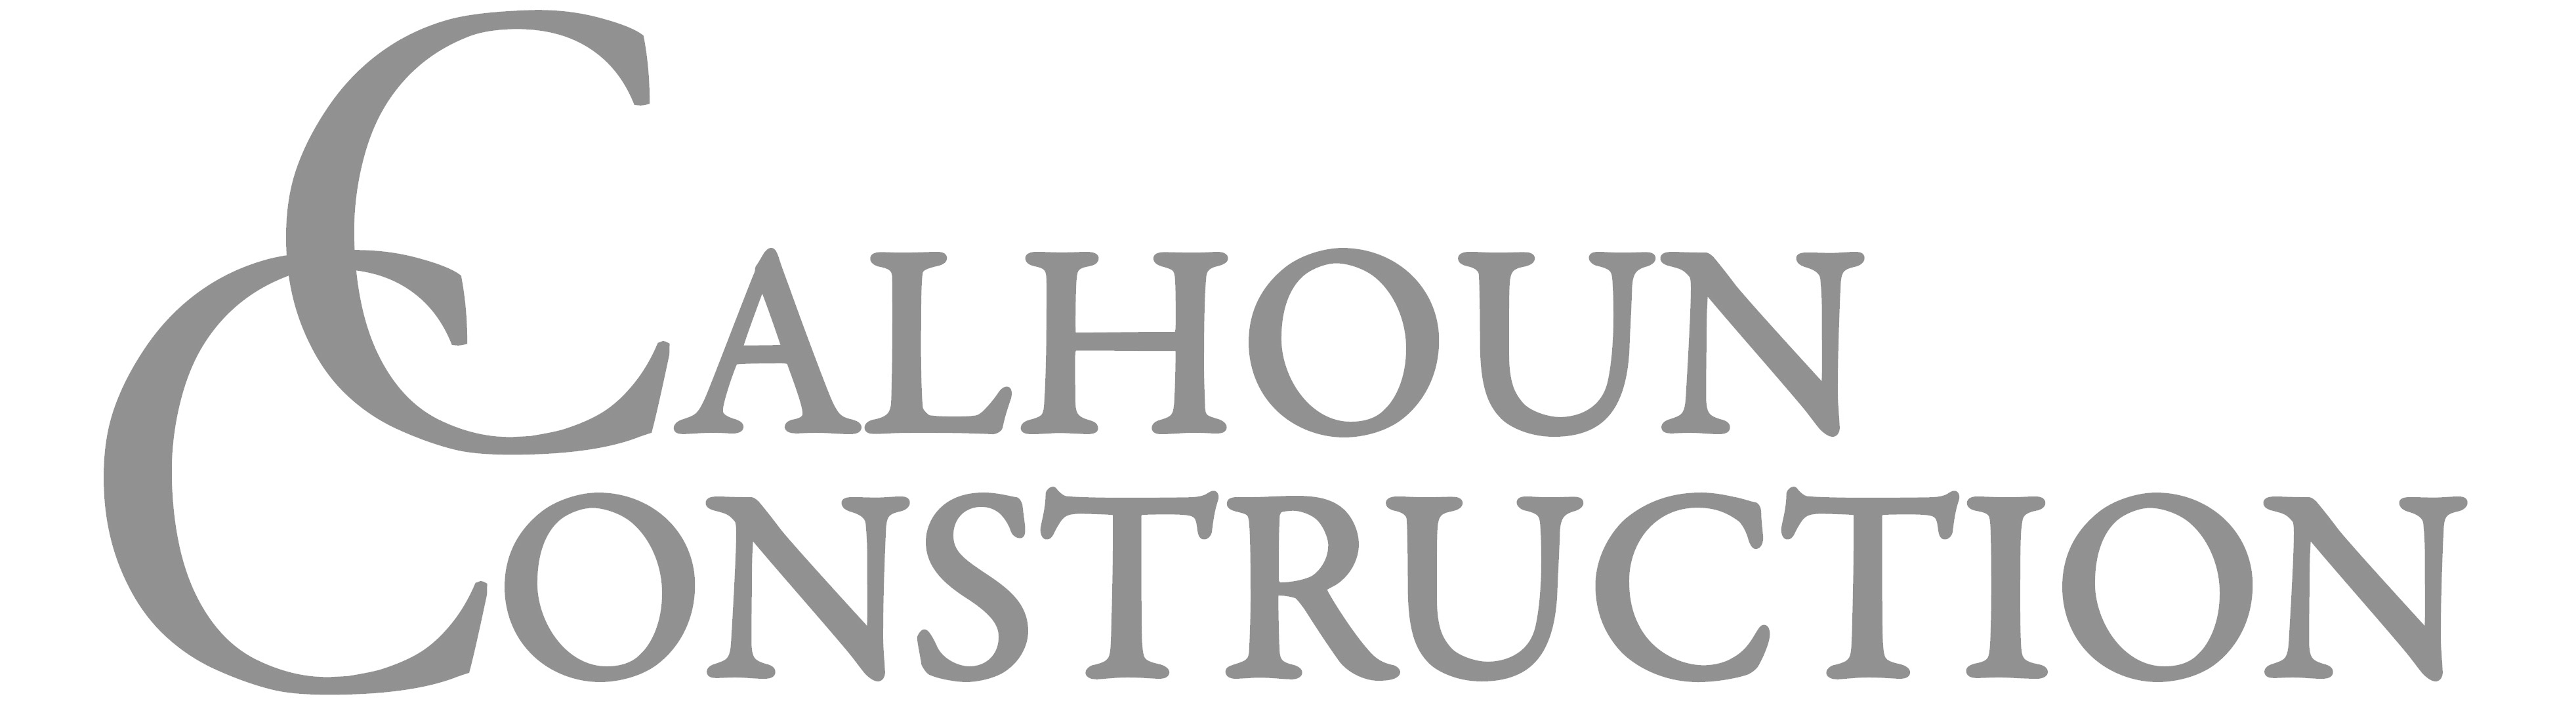 Calhoun Construction Logo